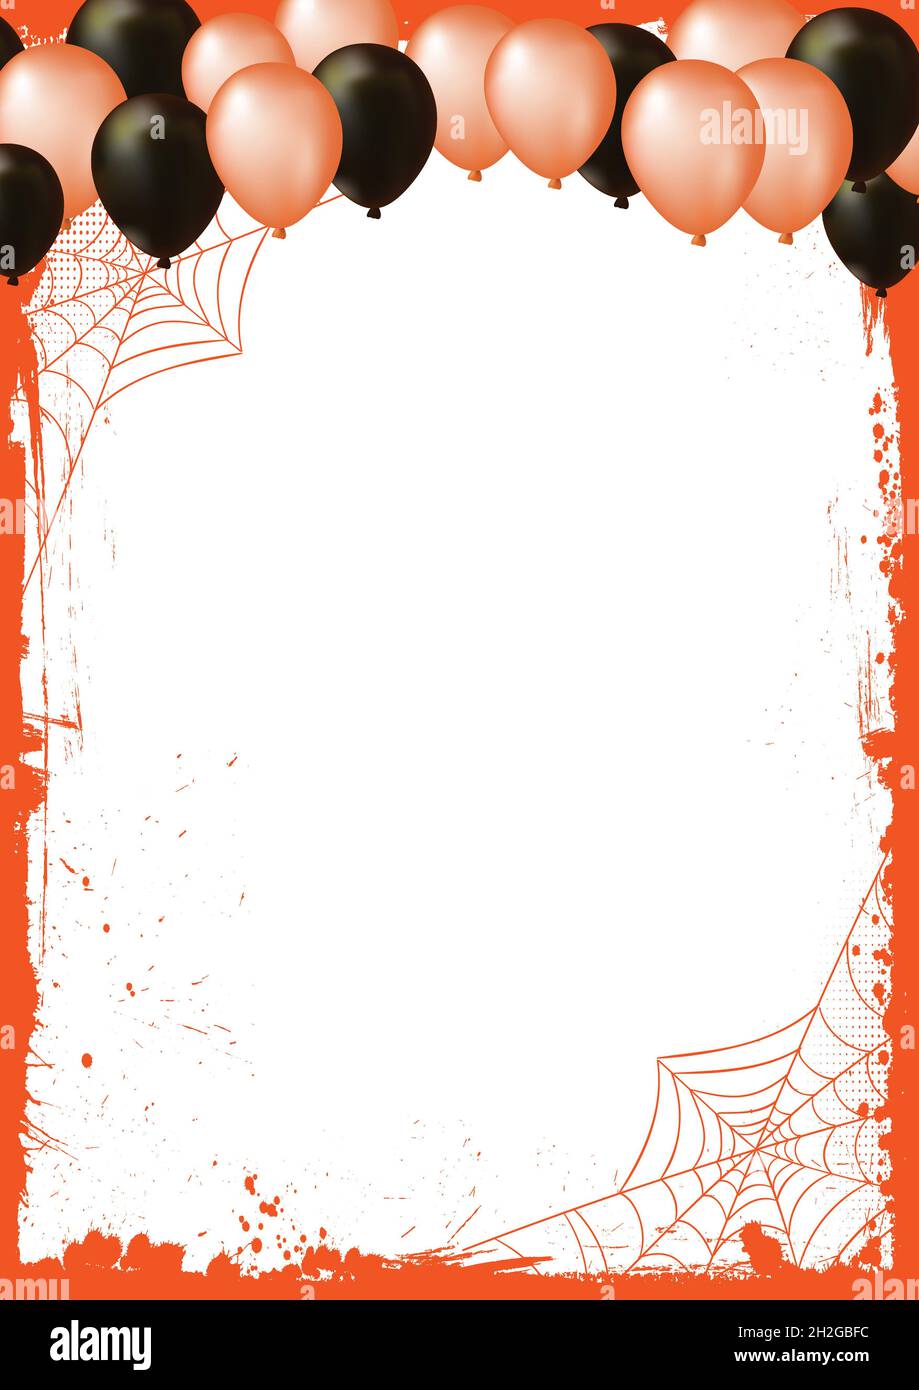 L'arrière-plan de la bannière d'Halloween vide vertical avec des ballons d'air et un filet d'araignée Banque D'Images